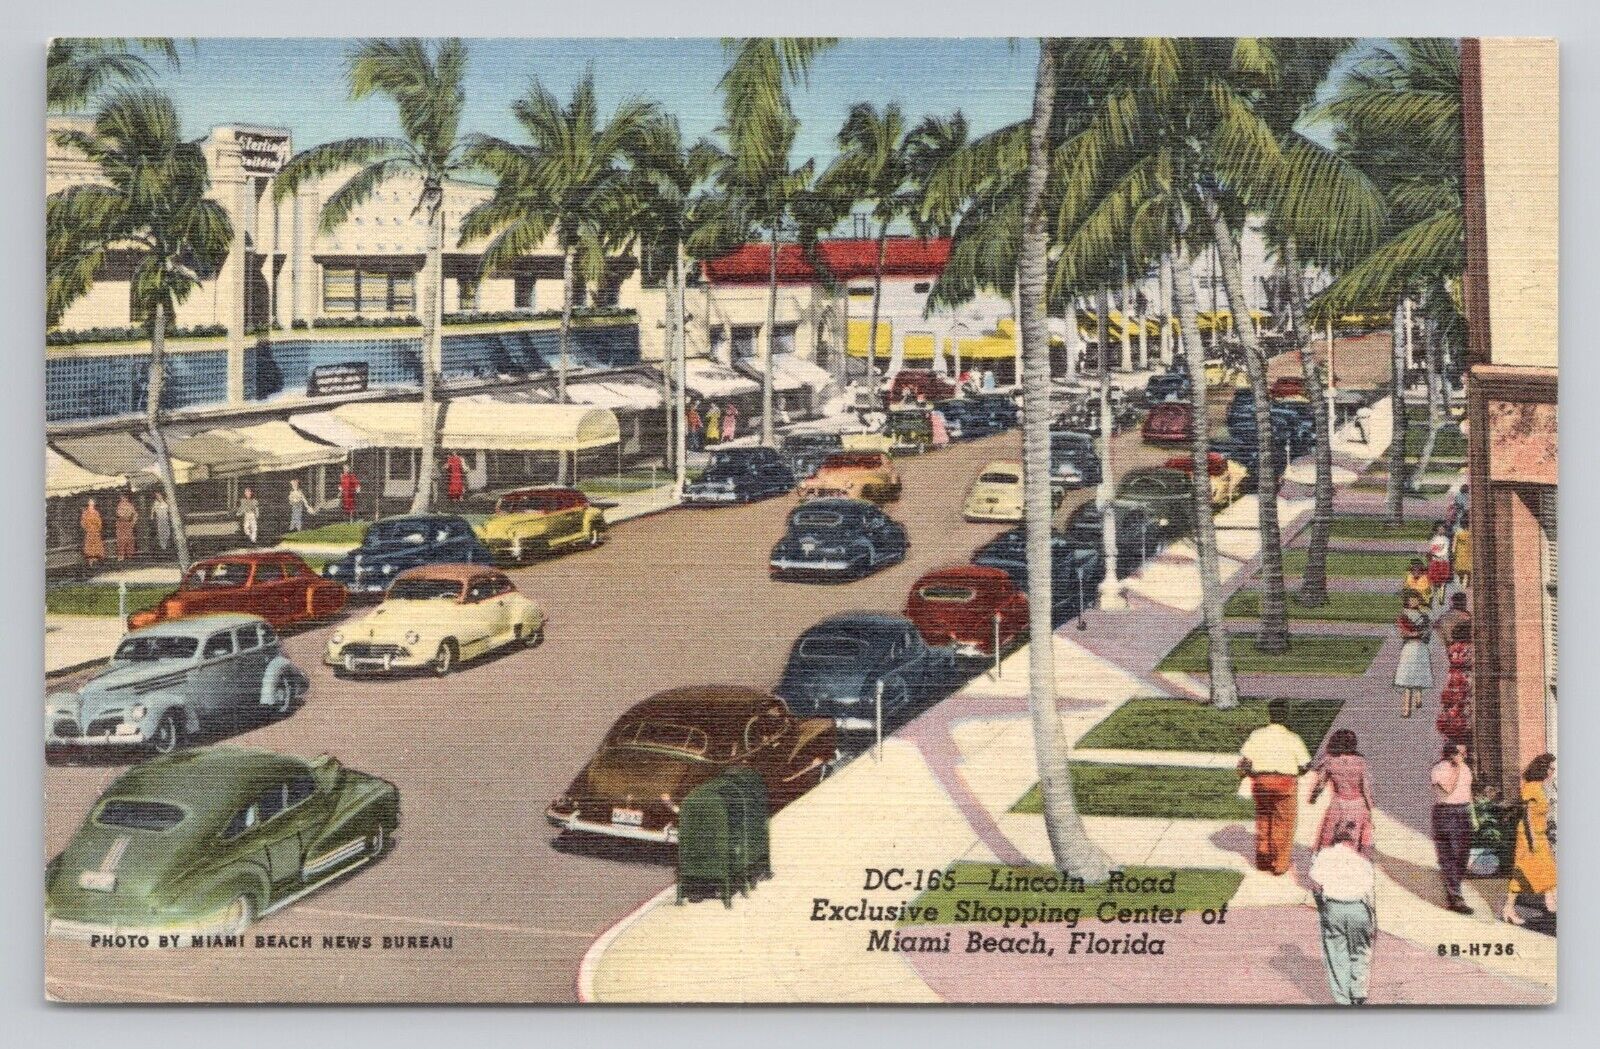 Lincoln Road Exclusive Shopping Center Miami Beach Florida Linen Postcard No5915